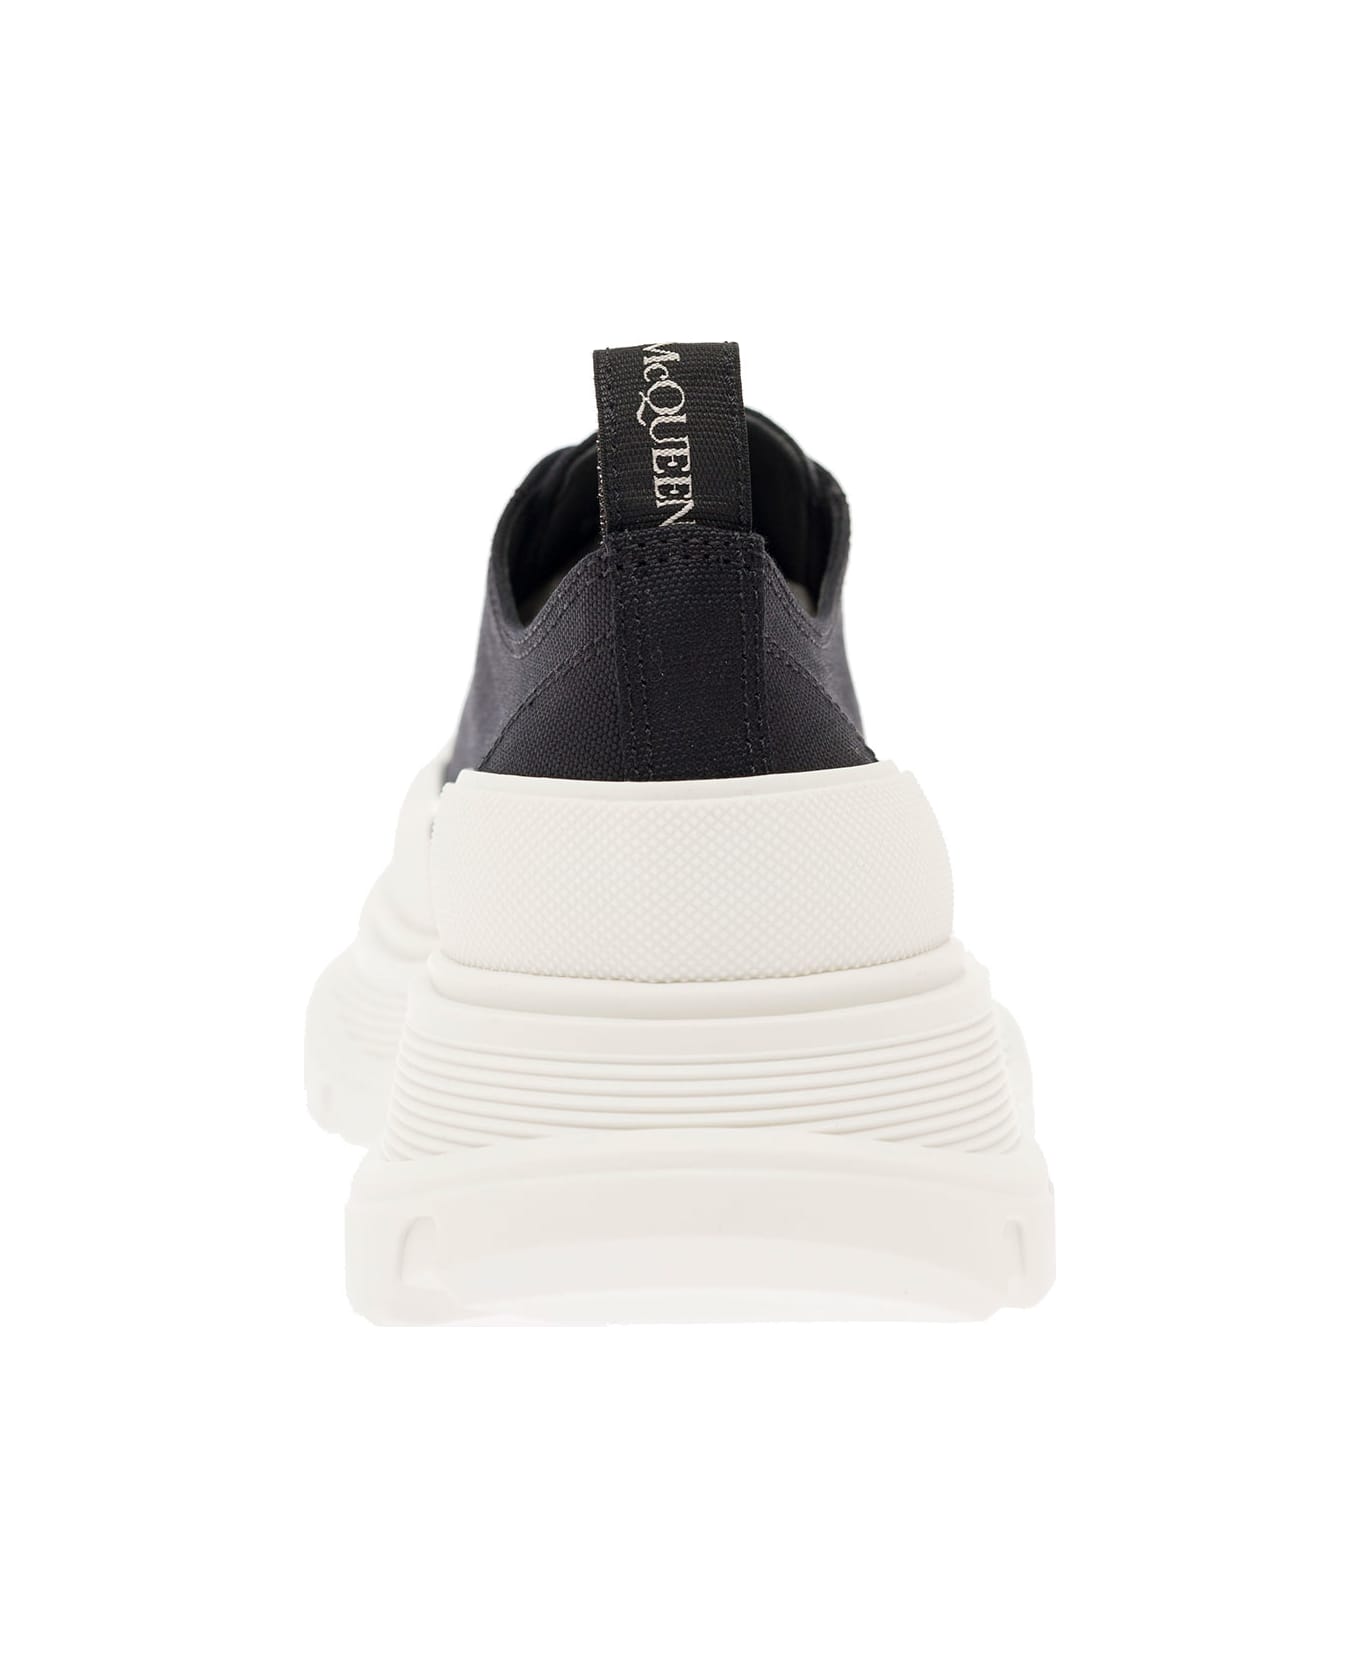 Alexander McQueen Woman's Tread Slick Black Cotton Sneakers - Black